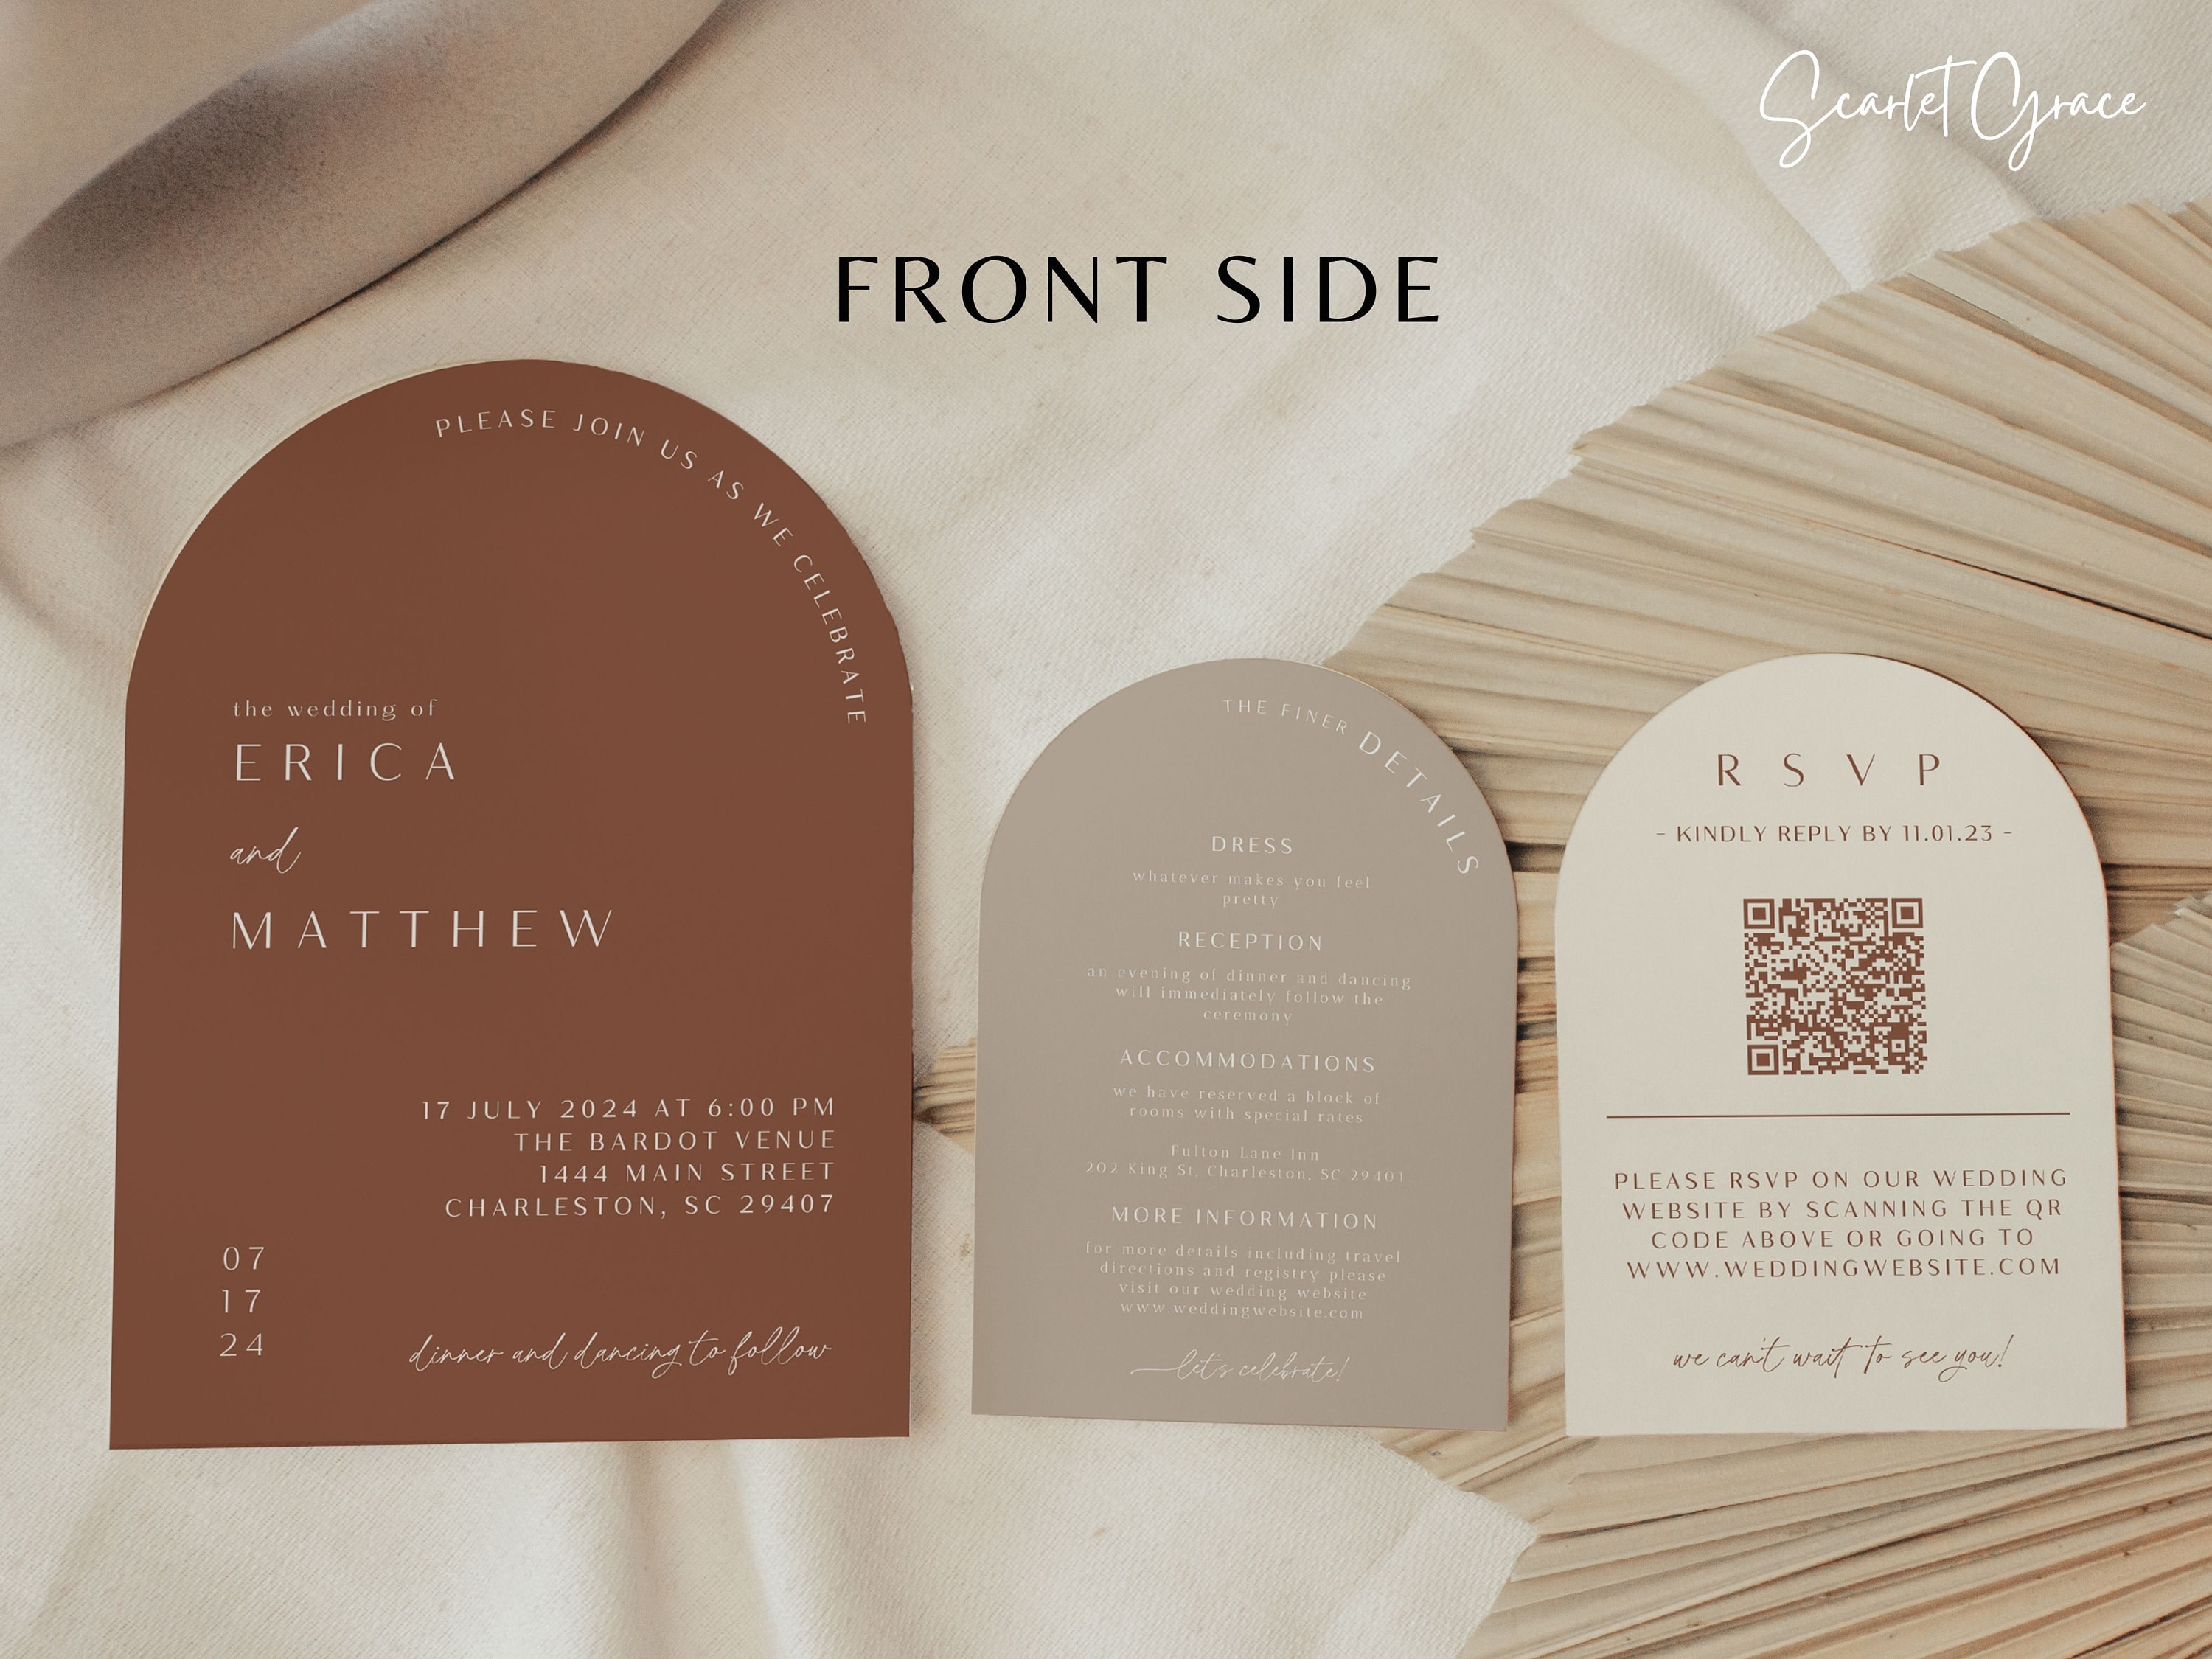 Terracotta Arch Wedding Invitations for Boho Desert Wedding – fioribelle